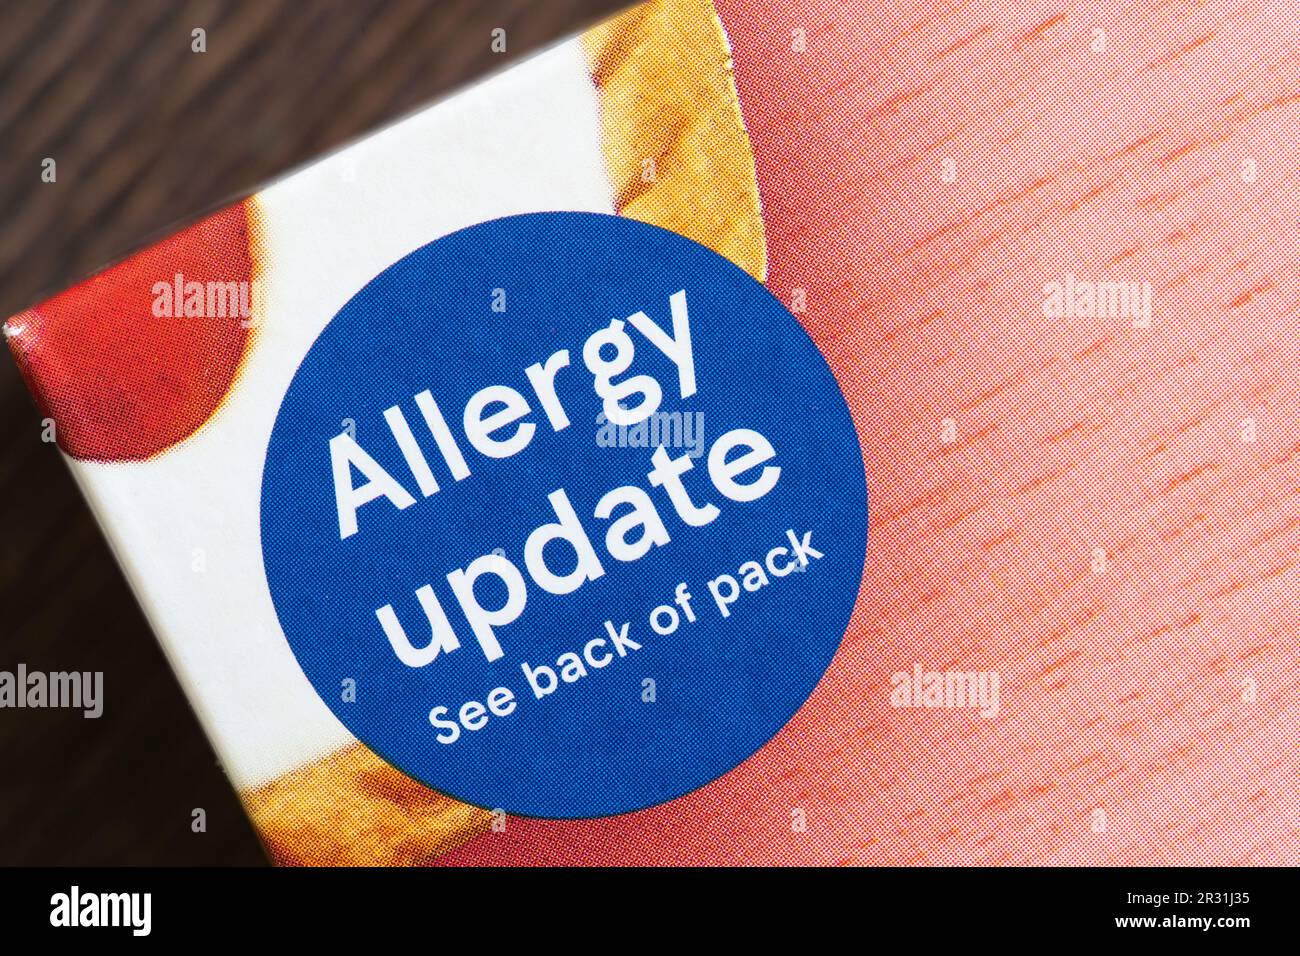 Étiquette de mise à jour des allergies sur le paquet de tartes aux cerisiers en merisier de marque Tesco, Angleterre. Concept: Allergies alimentaires, allergies alimentaires, réaction allergique Banque D'Images